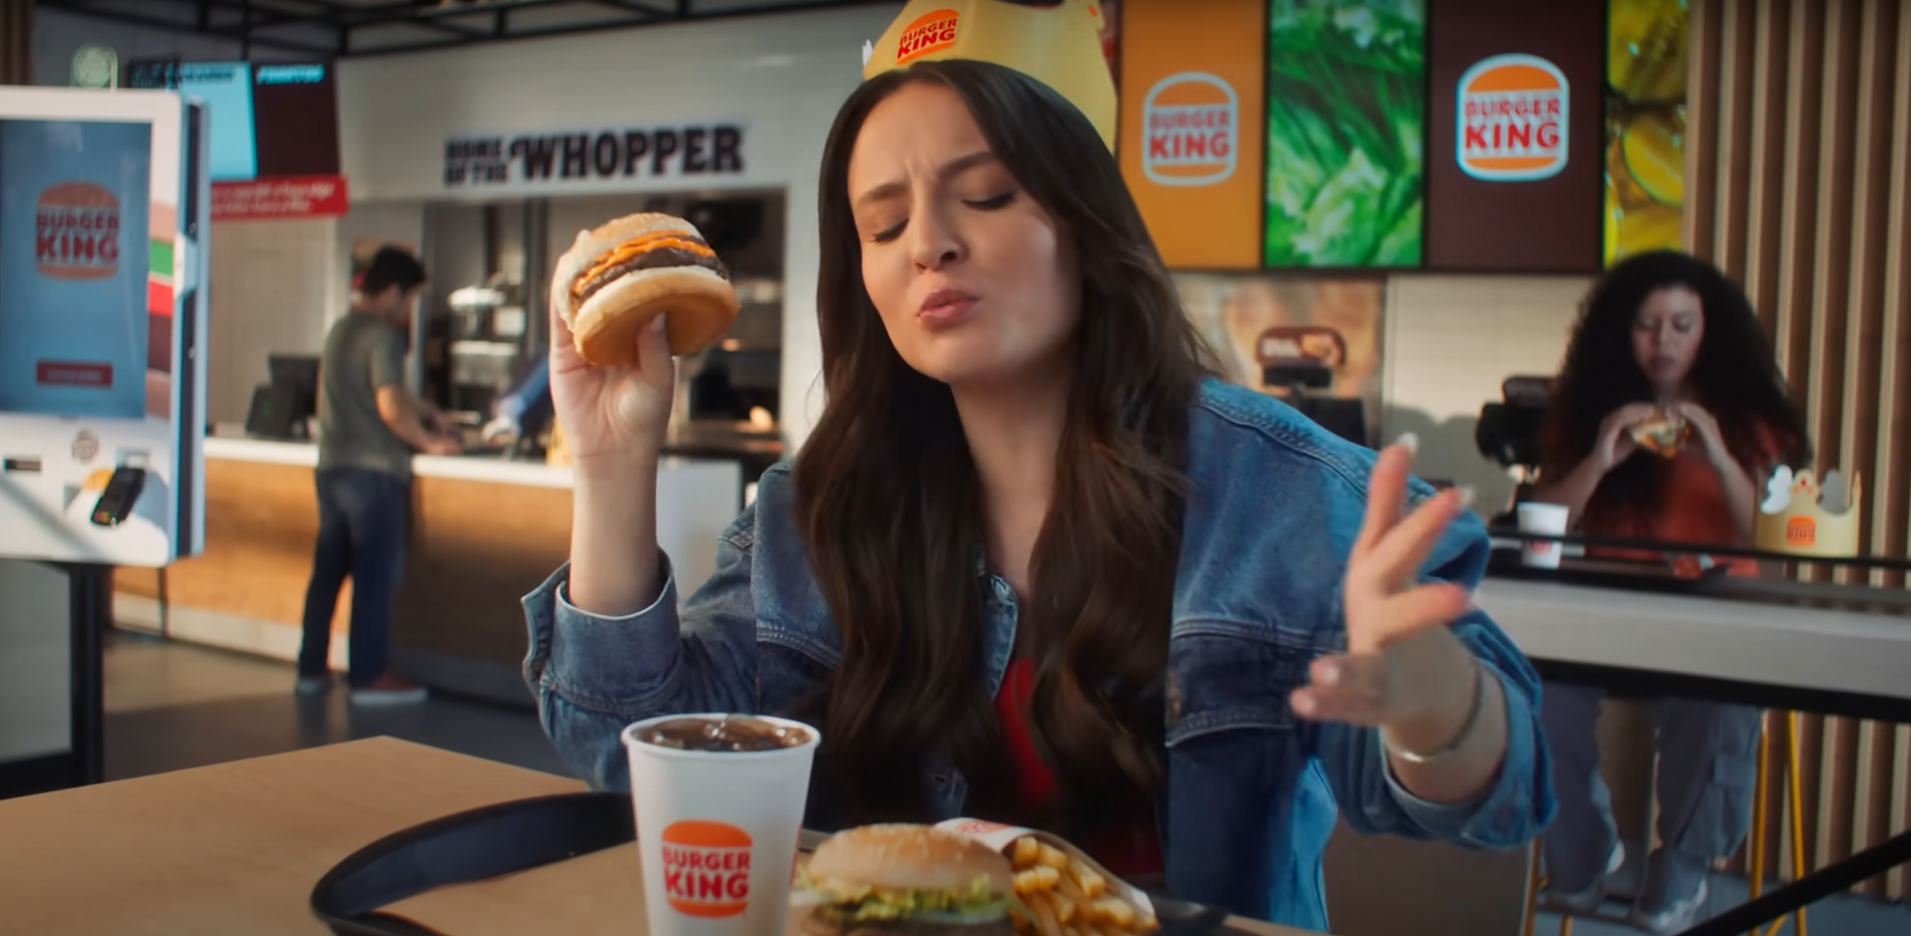 No momento você está vendo “Rei do hambúrguer” ou Rei do Markeging? Burger King.